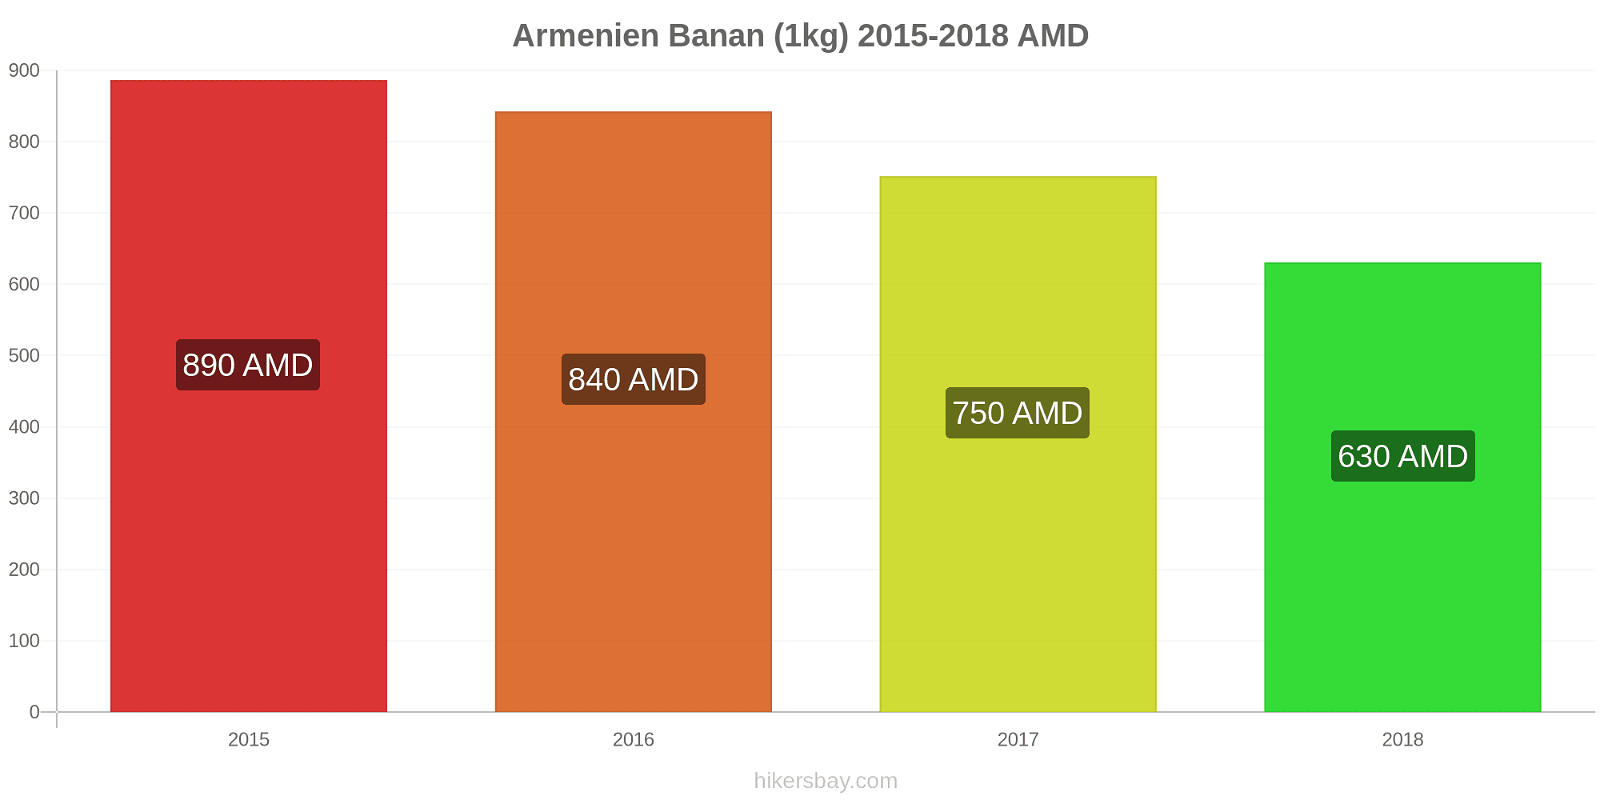 Armenien prisändringar Bananer (1kg) hikersbay.com